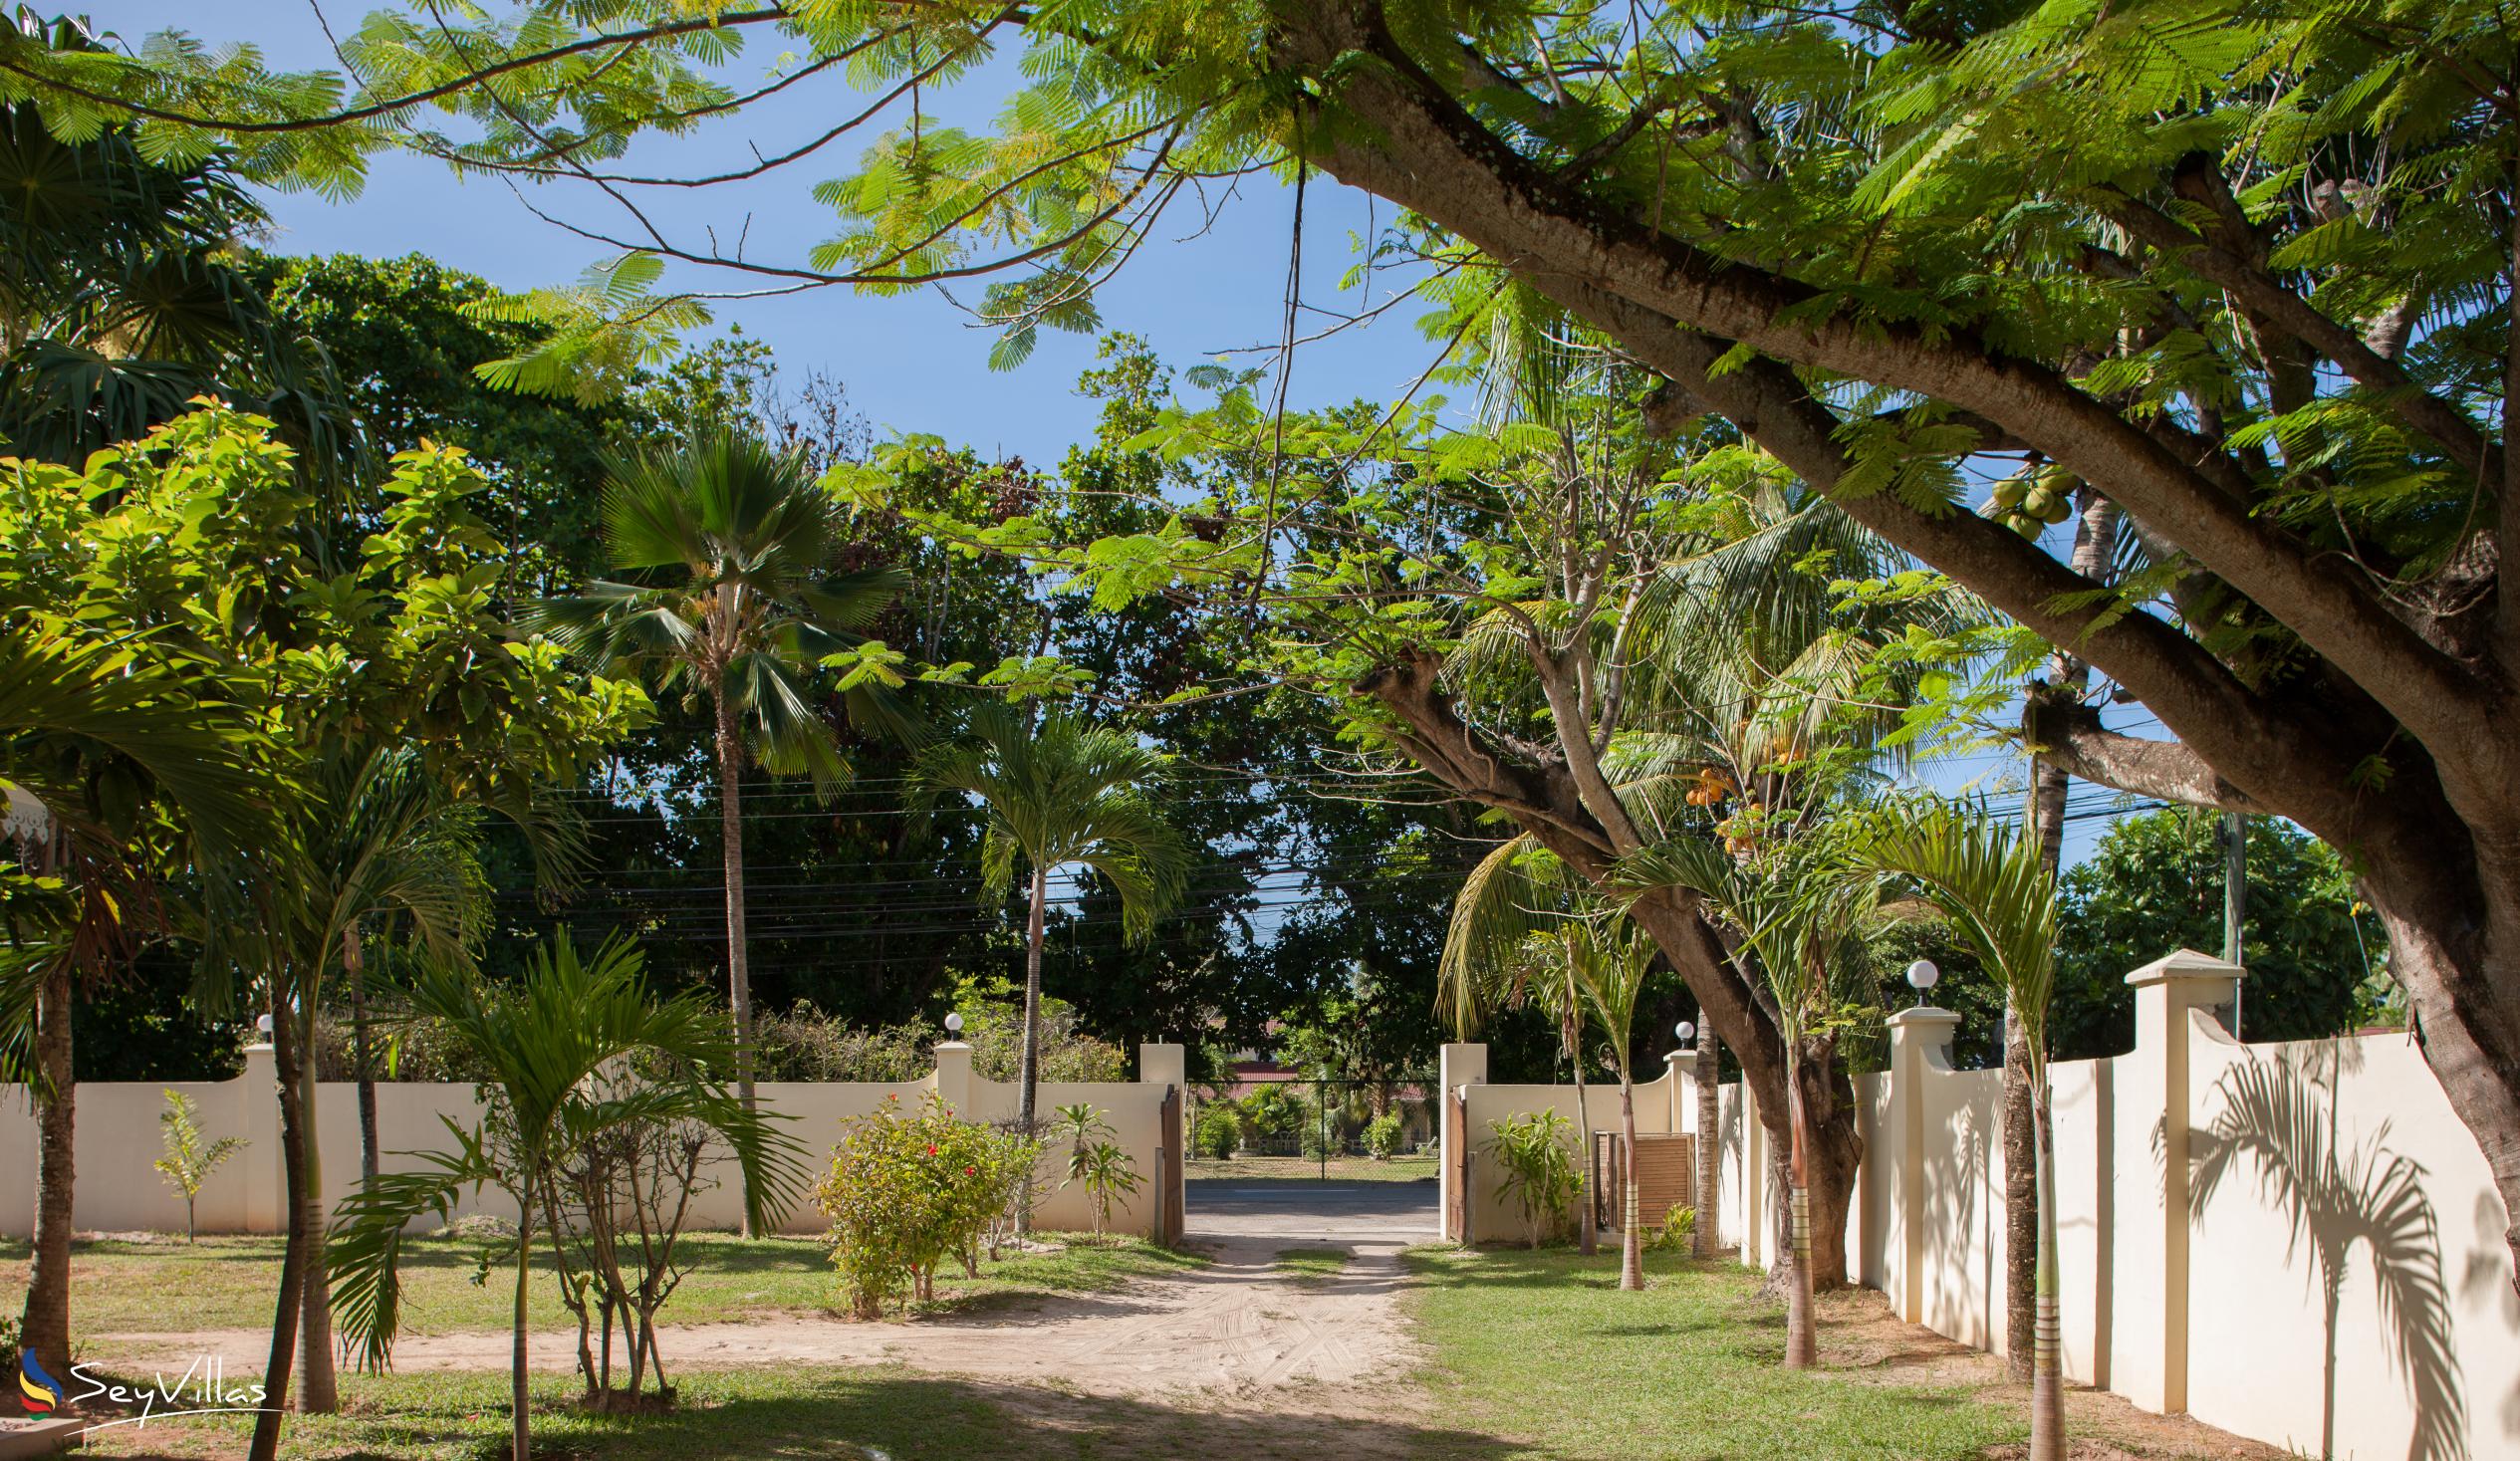 Photo 48: Villa Confort - Outdoor area - Praslin (Seychelles)